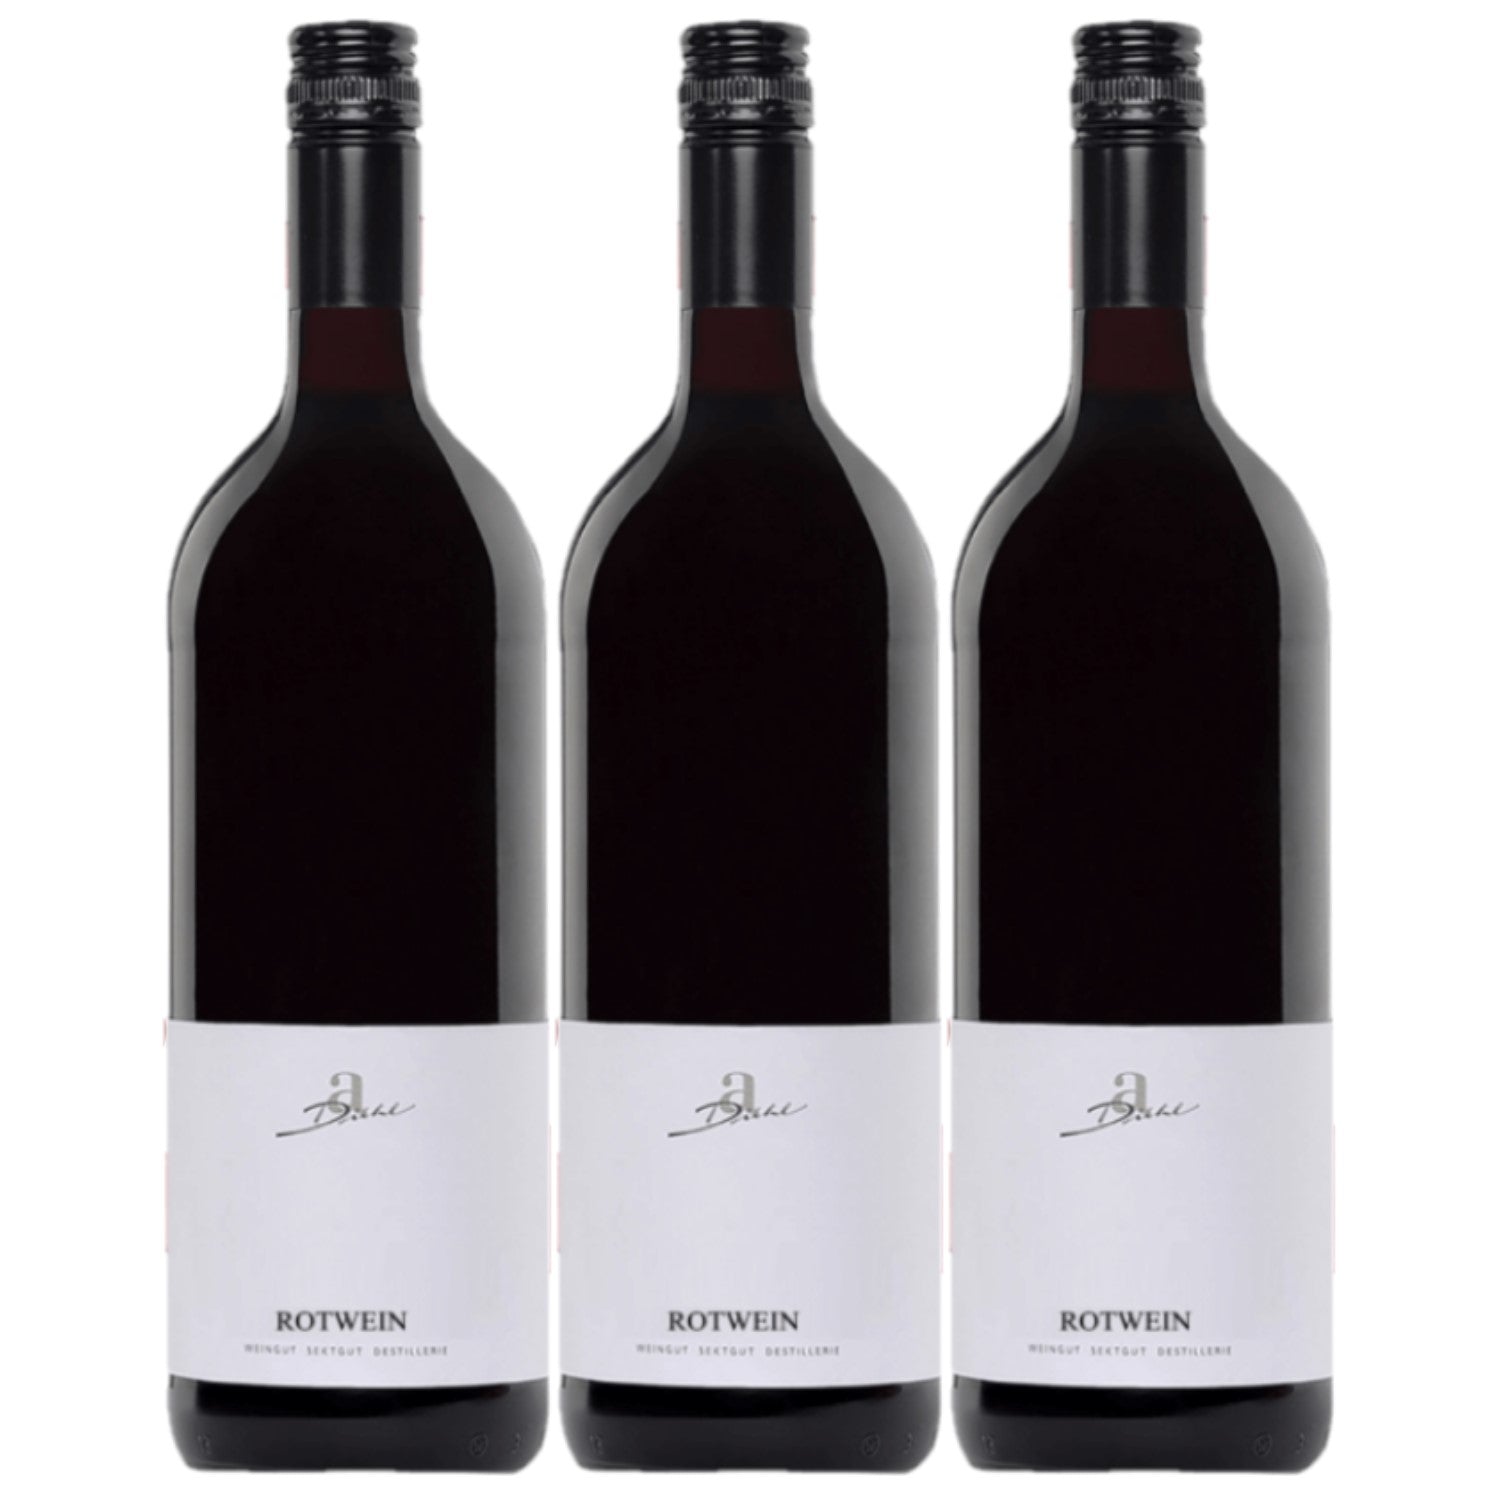 A. Diehl Rotwein Cuvée süss Pfalz Dt. Qualitätswein (3 x 1.0l) - Versanel -